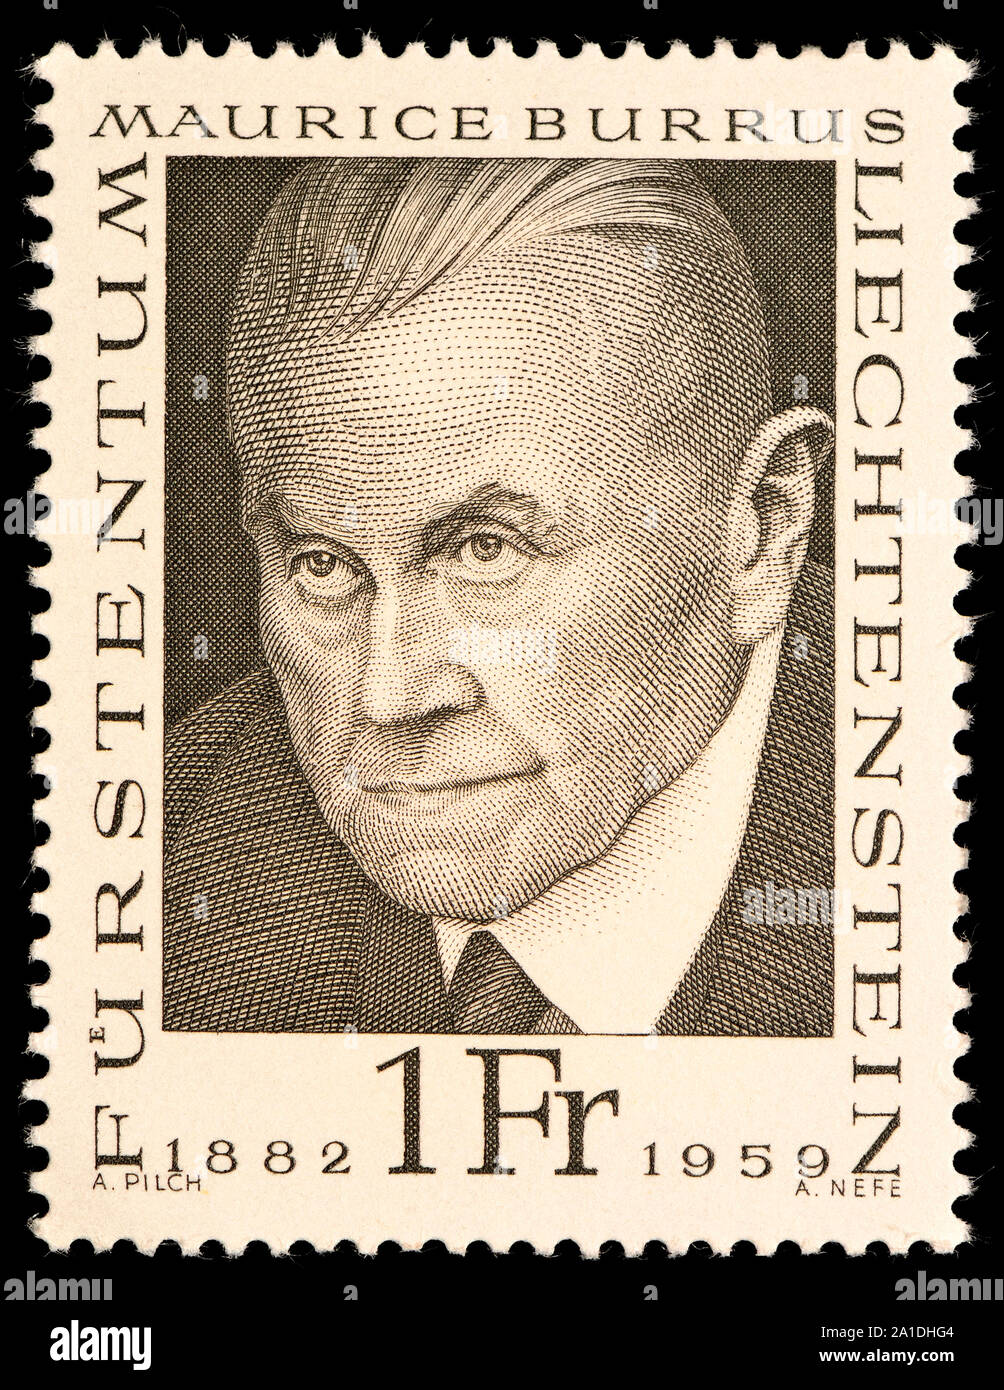 Liechtenstein postage stamp (1968) : Maurice Burrus (1882-1959) tobacco magnate, politician and philatelist Stock Photo